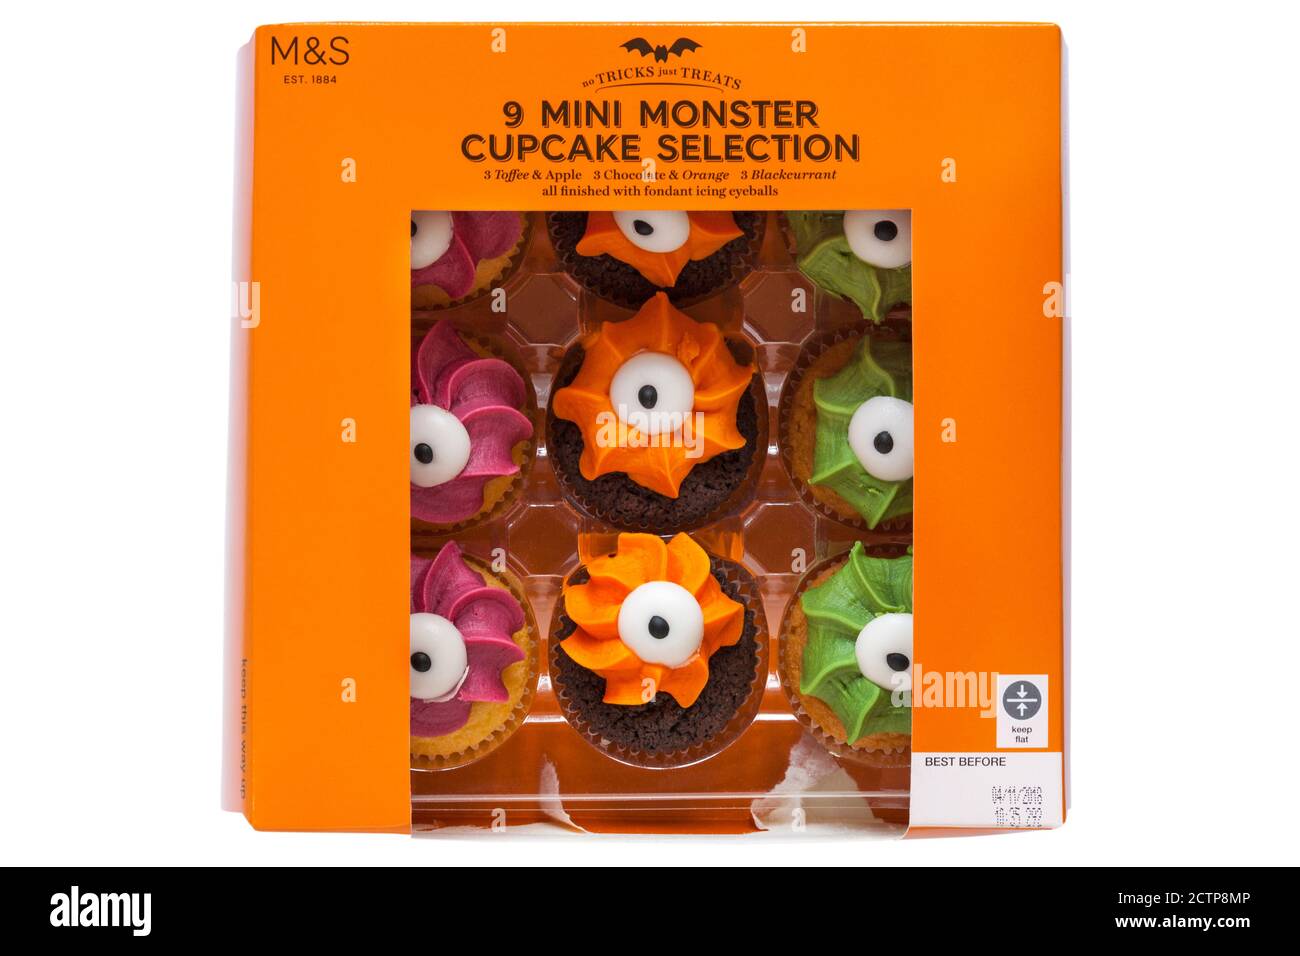 Boîte de sélection de mini-gâteau monstre M&S - mini-monstre Gâteaux de cupcake finis avec fondant glace oeil-de-boule pour Halloween isolé sur fond blanc Banque D'Images